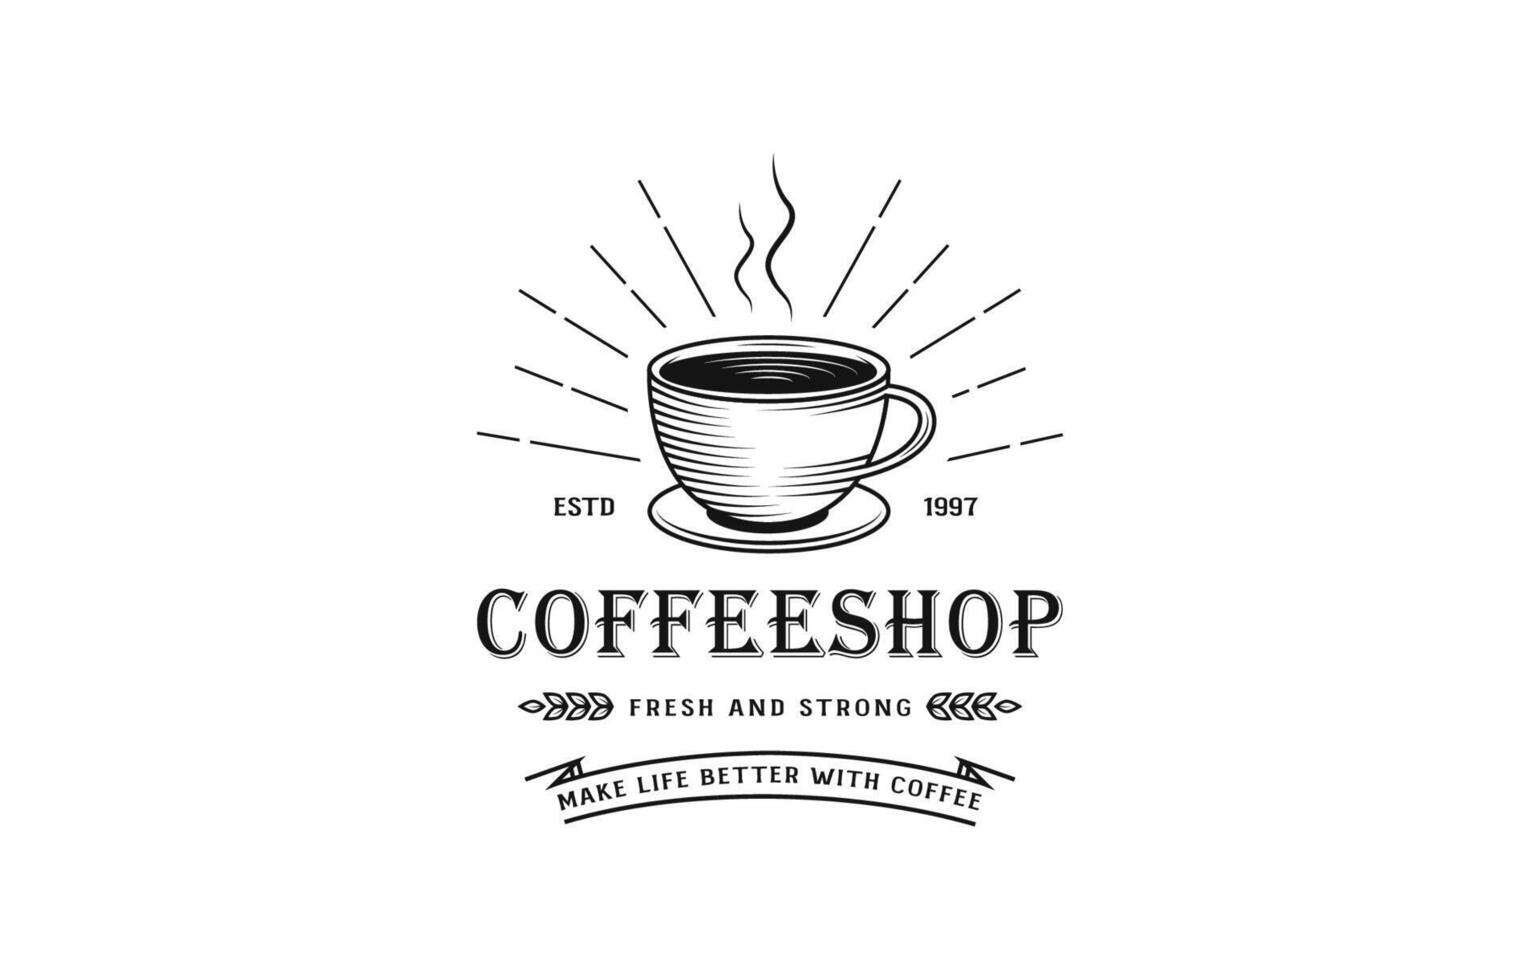 Clásico café logo, café logo, café logo, café taza logo, café tienda logo, Clásico logo, retro logo, caliente café logo, bebida café logo vector